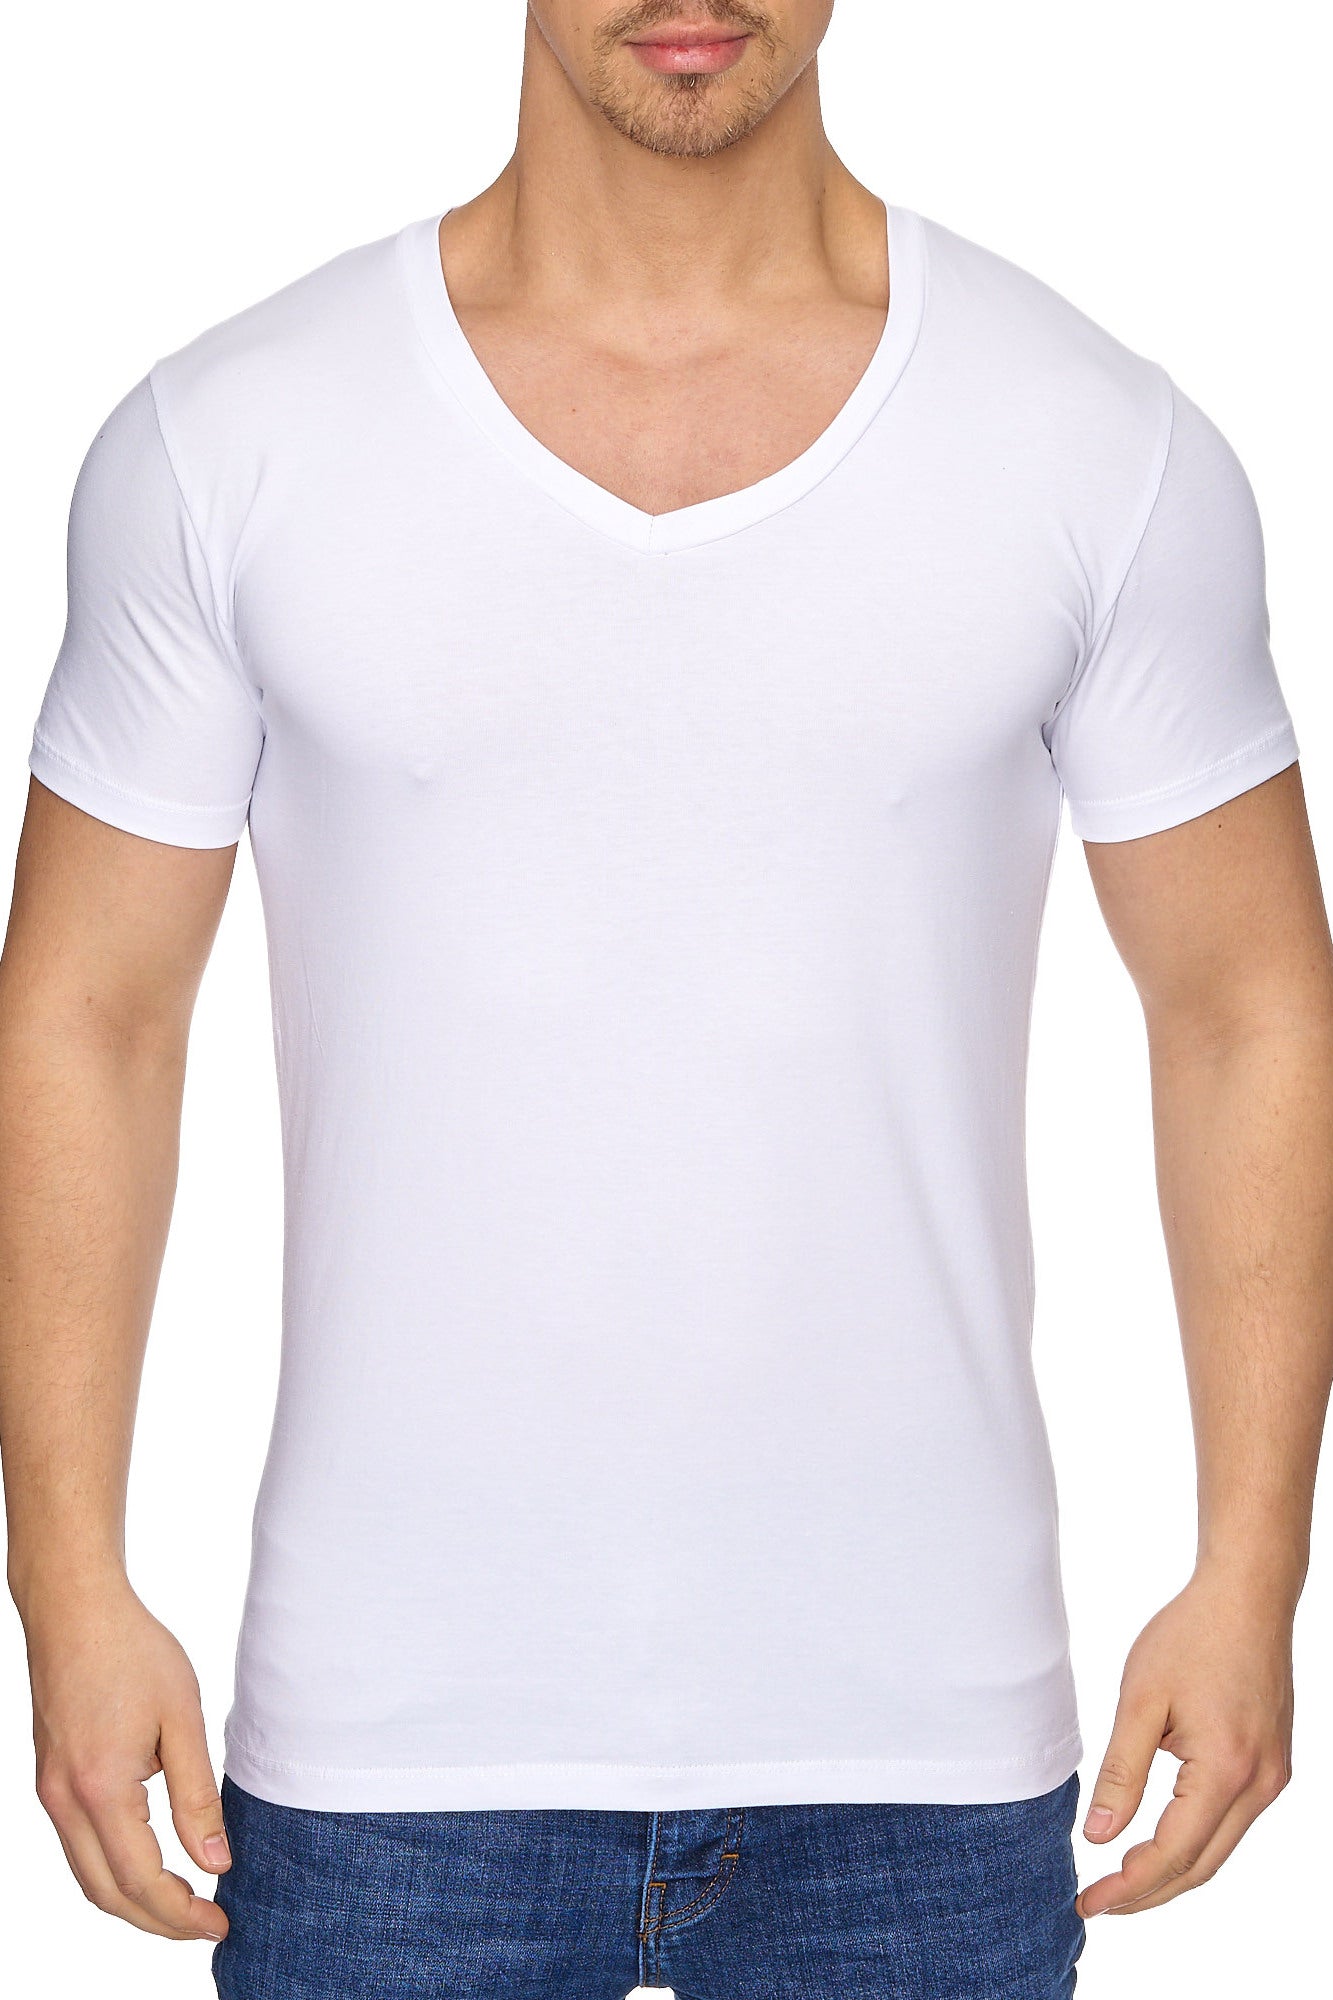 Tazzio Herren T-Shirt mit V-Ausschnitt 17100